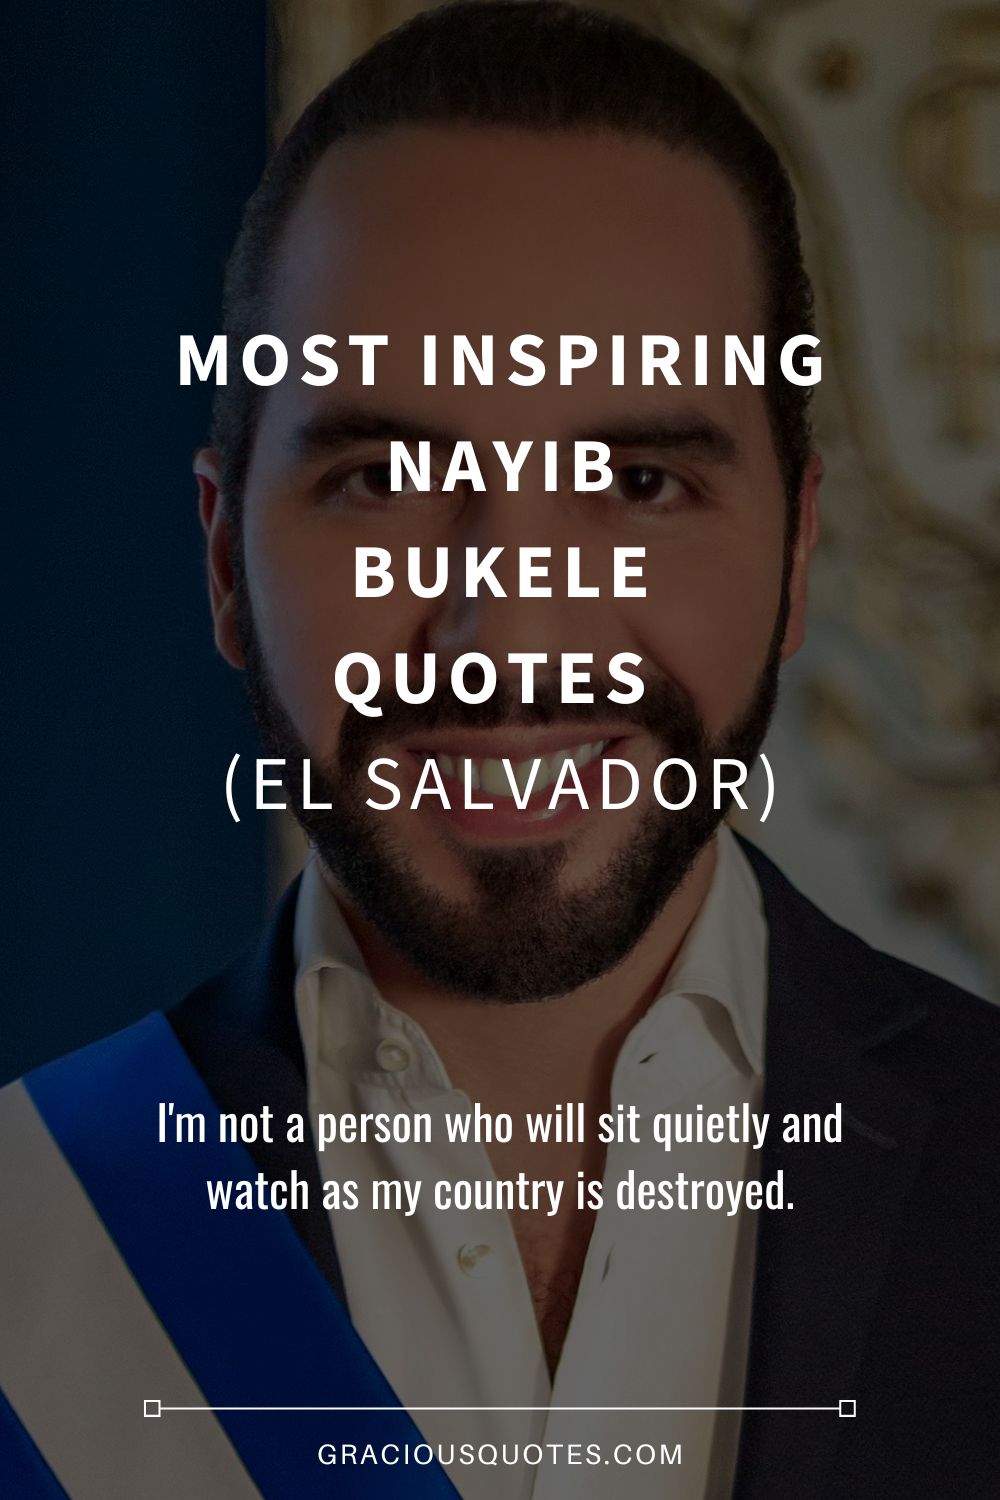 Most Inspiring Nayib Bukele Quotes  (EL SALVADOR) - Gracious Quotes